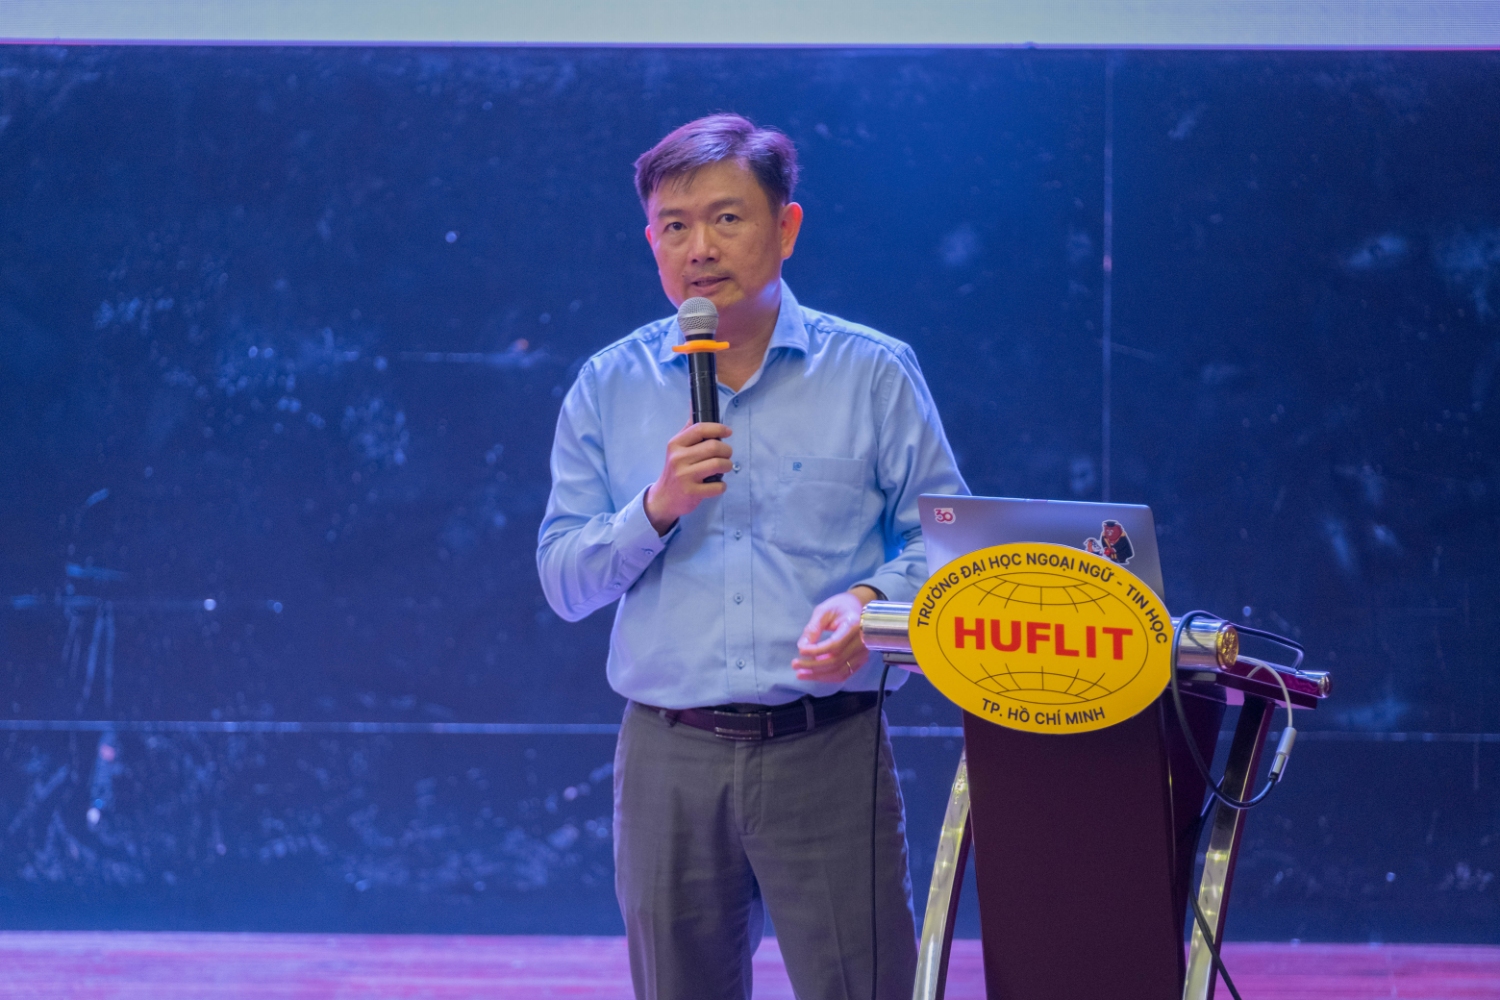 Đồng chí Nguyễn Anh Tuấn – Bí thư Đảng ủy, hiệu trưởng trường đại học Ngoại ngữ tin học Thành phố Hồ Chí Minh chia sẻ kinh nghiệm tại hội nghị